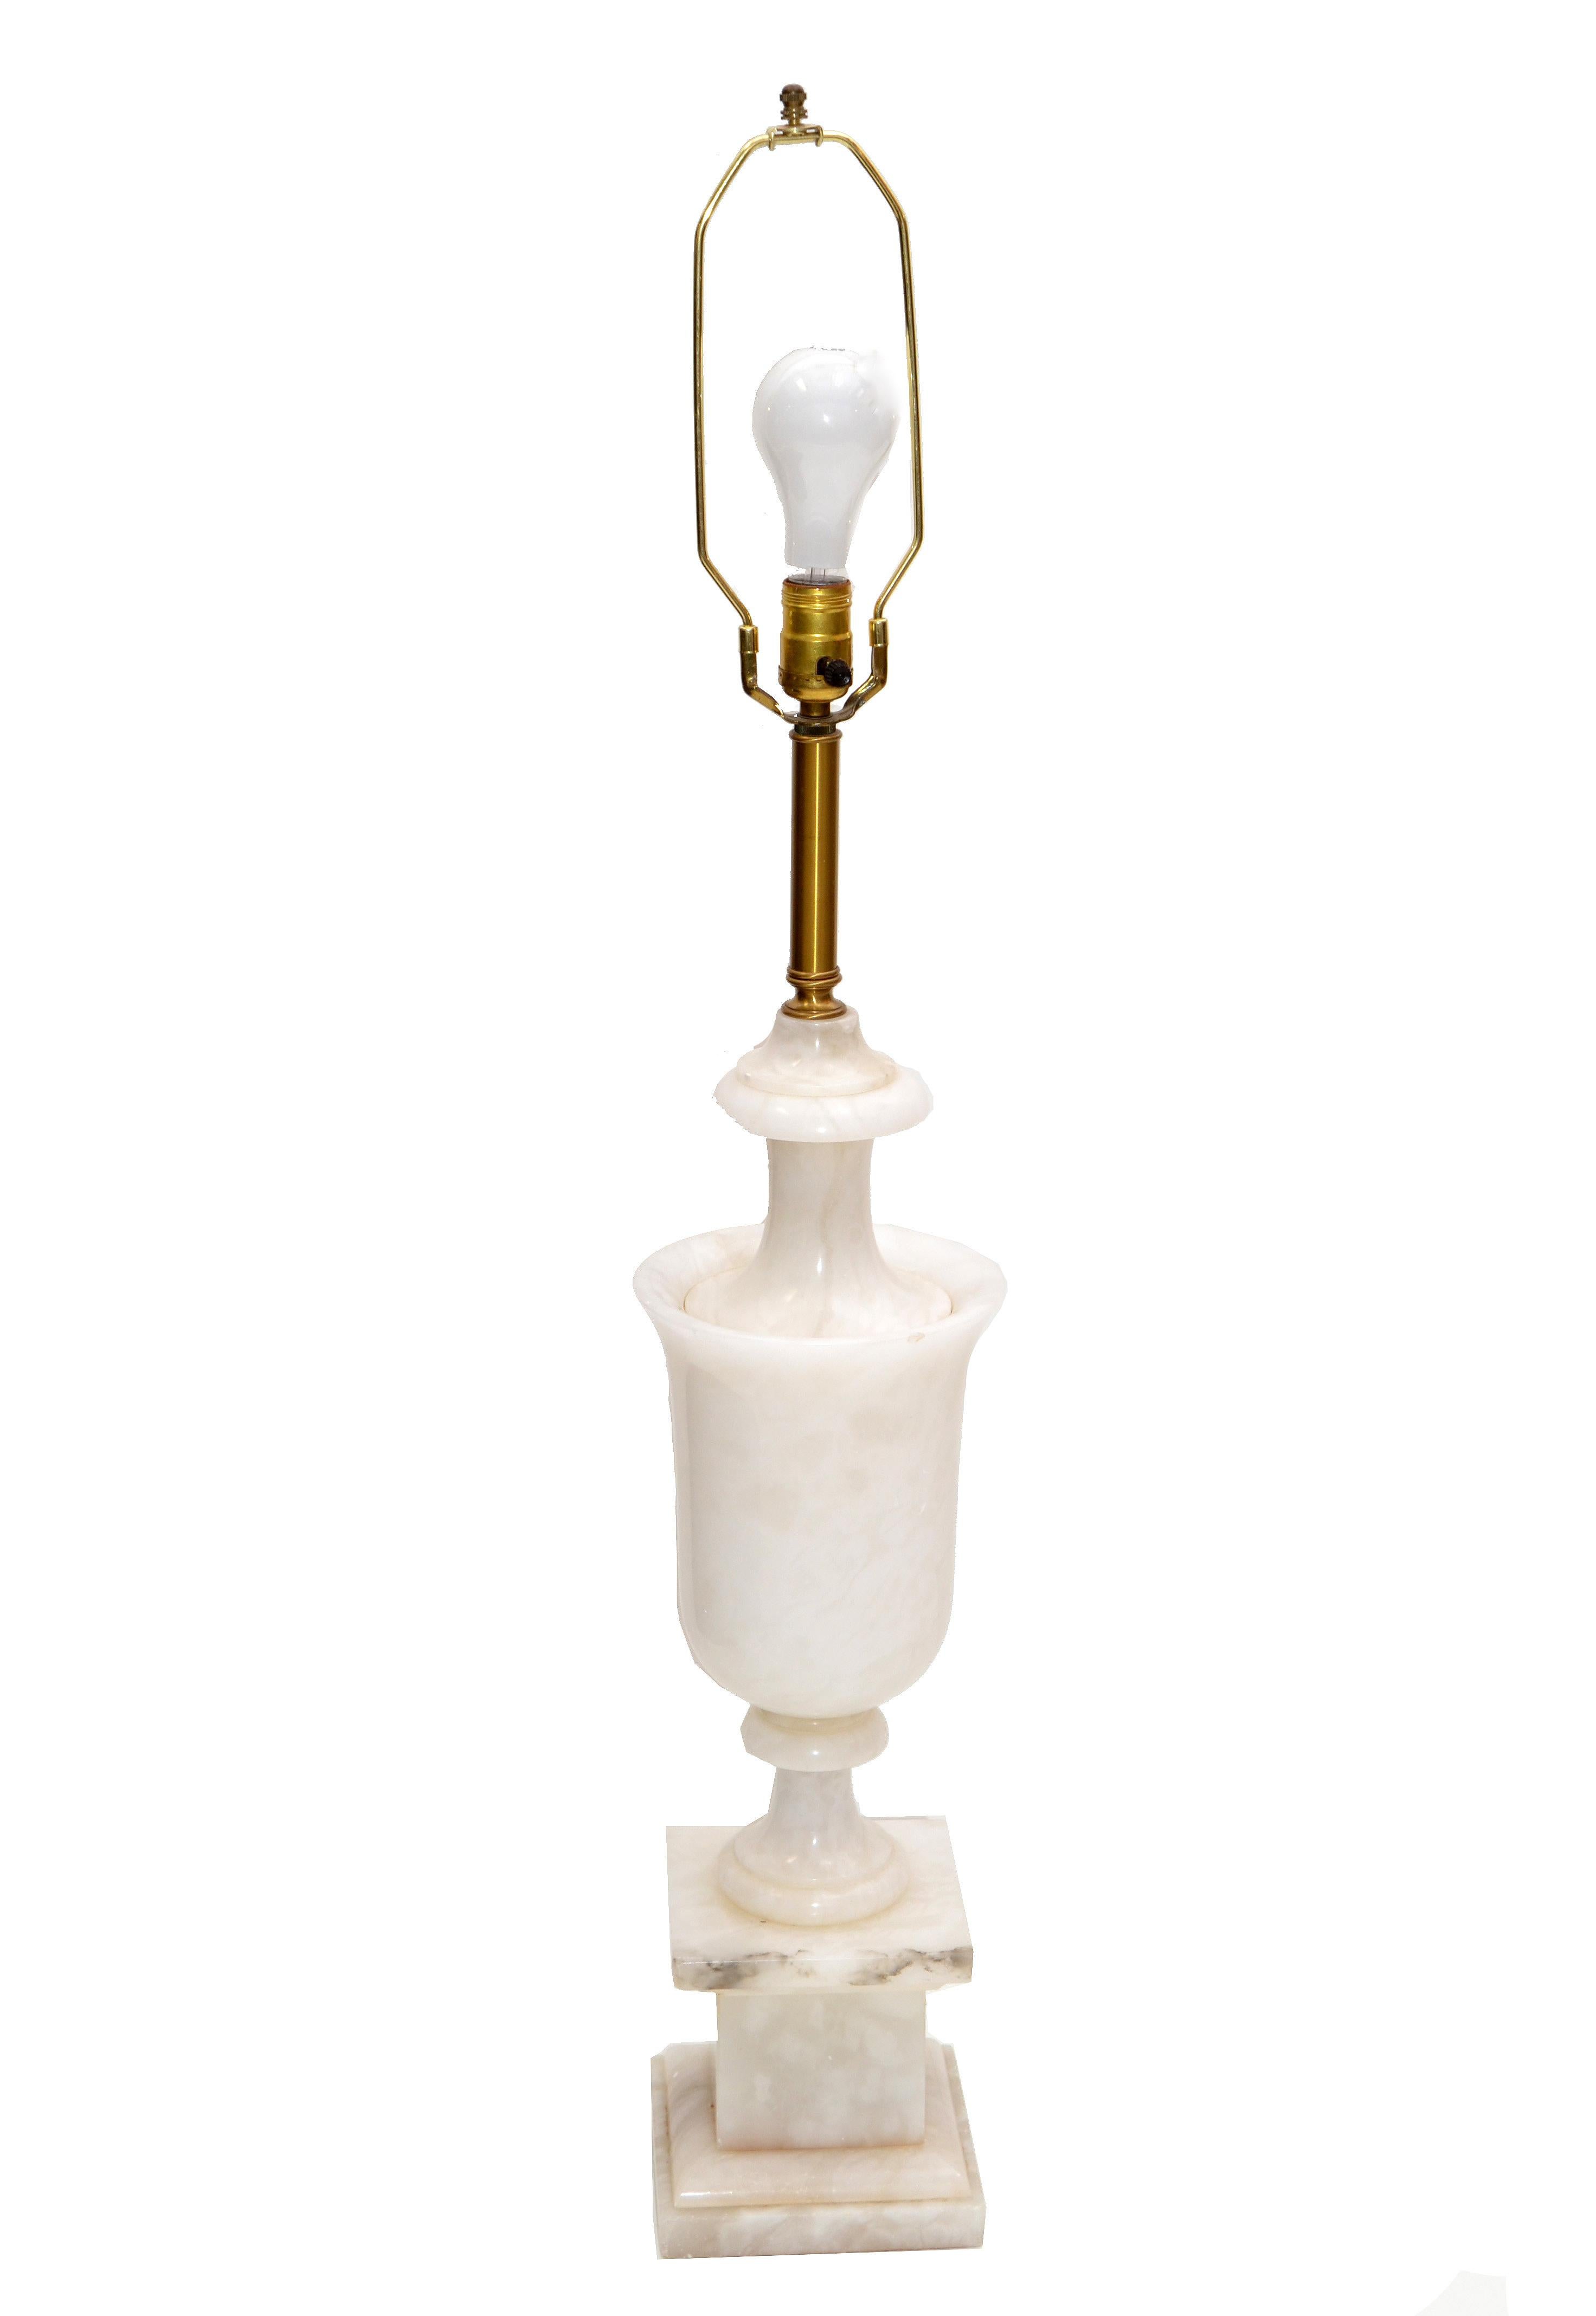 Lampe de table Art Déco en marbre de Carrare sculpté à la main et en laiton, fabriquée en Italie.
Livrée avec harpe et fleuron, elle est compatible avec une ampoule de 75 watts max. 75 watts.
Pas d'ombre.